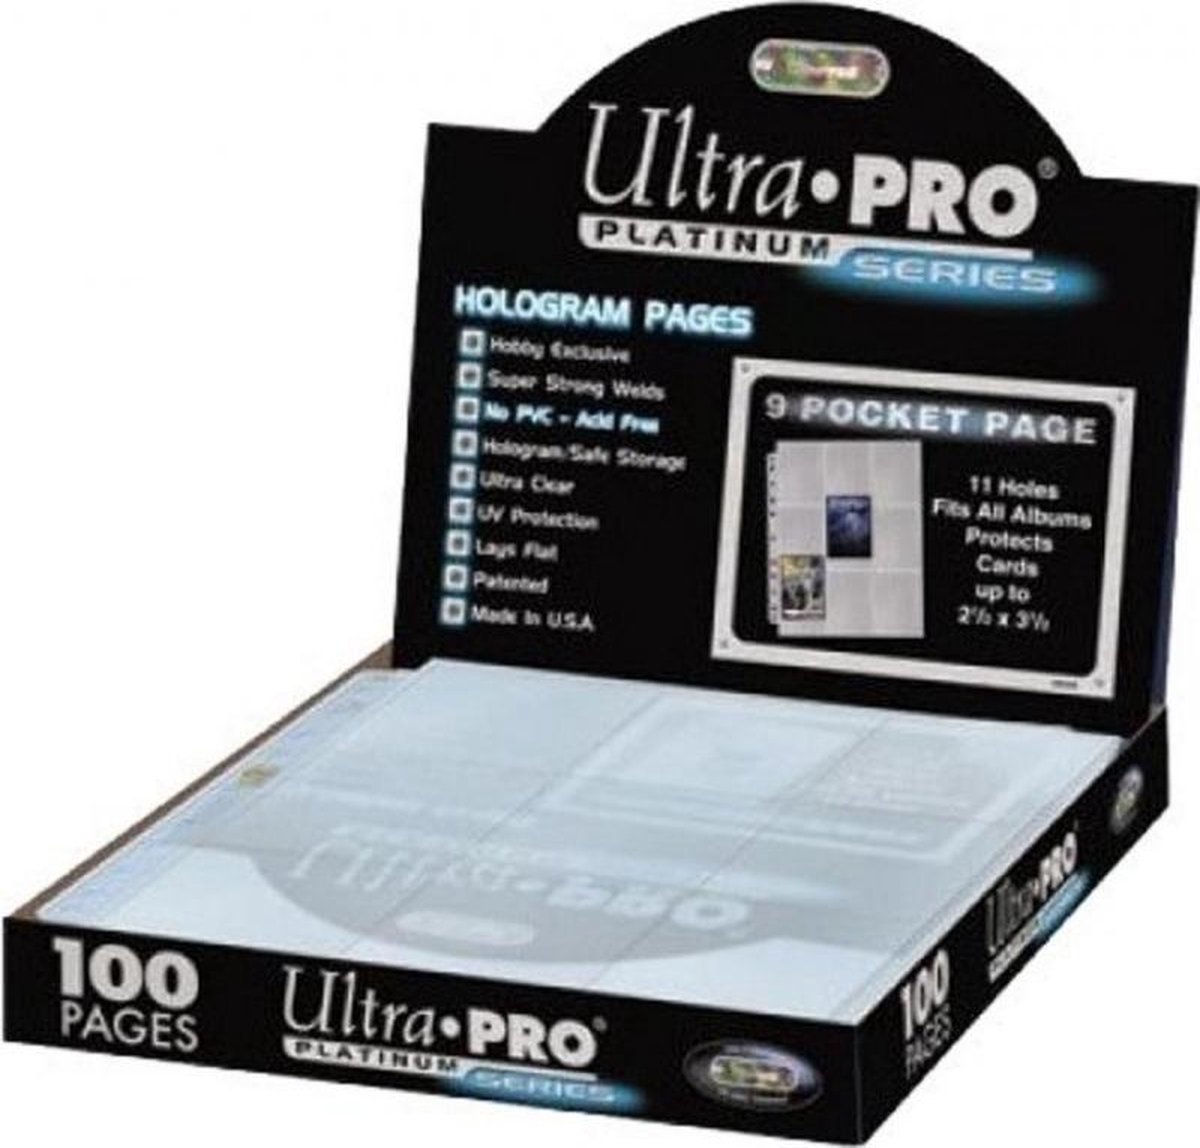 Ultra Pro 9 Pocket Pages Platinum | 100 pack